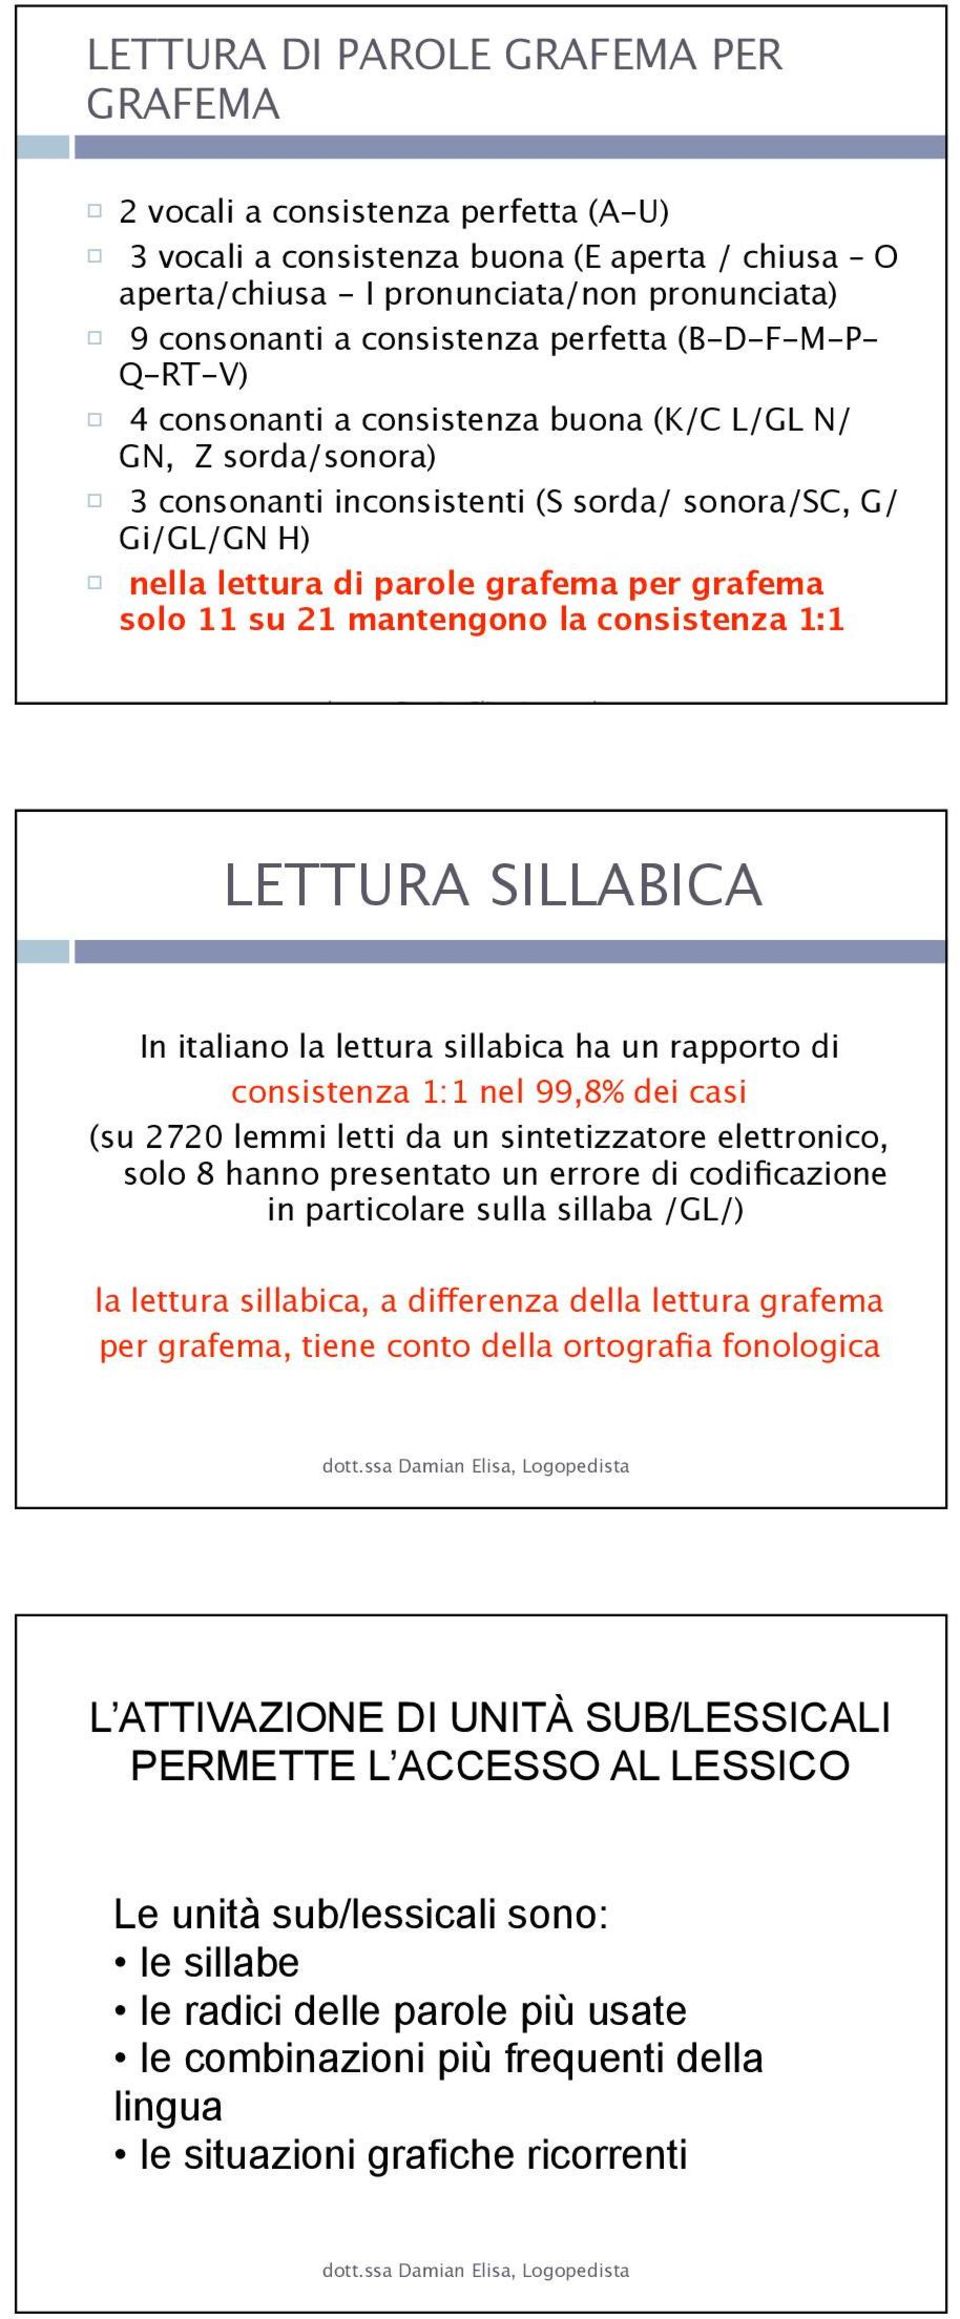 grafema solo 11 su 21 mantengono la consistenza 1:1 LETTURA SILLABICA In italiano la lettura sillabica ha un rapporto di consistenza 1:1 nel 99,8% dei casi (su 2720 lemmi letti da un sintetizzatore